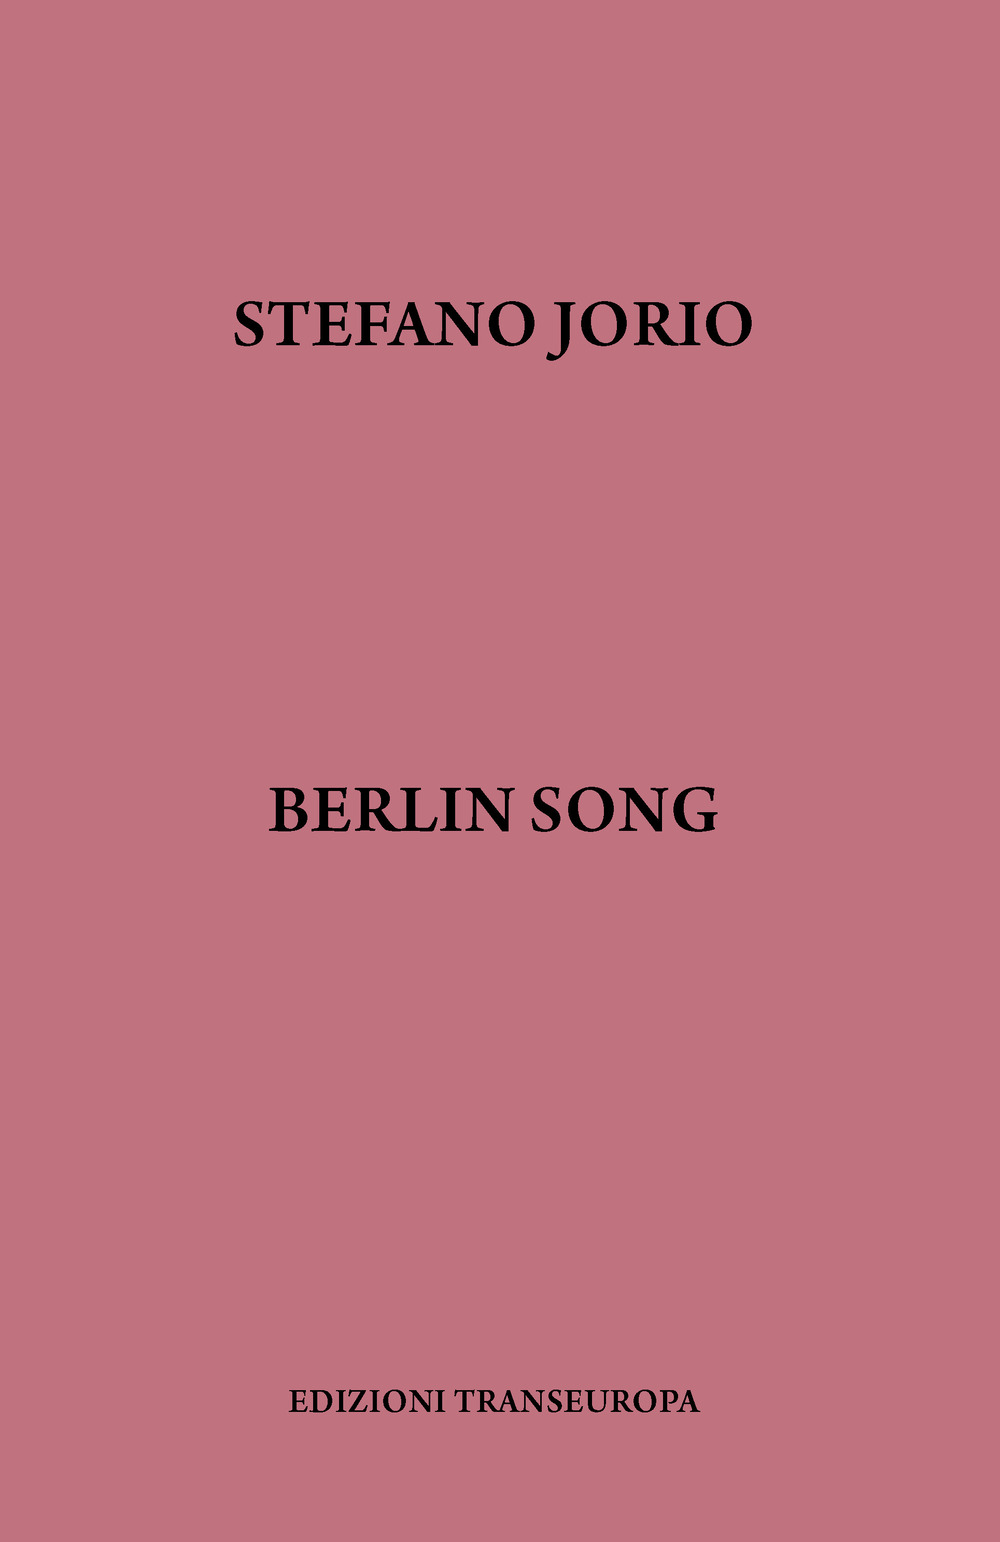 Berlin song